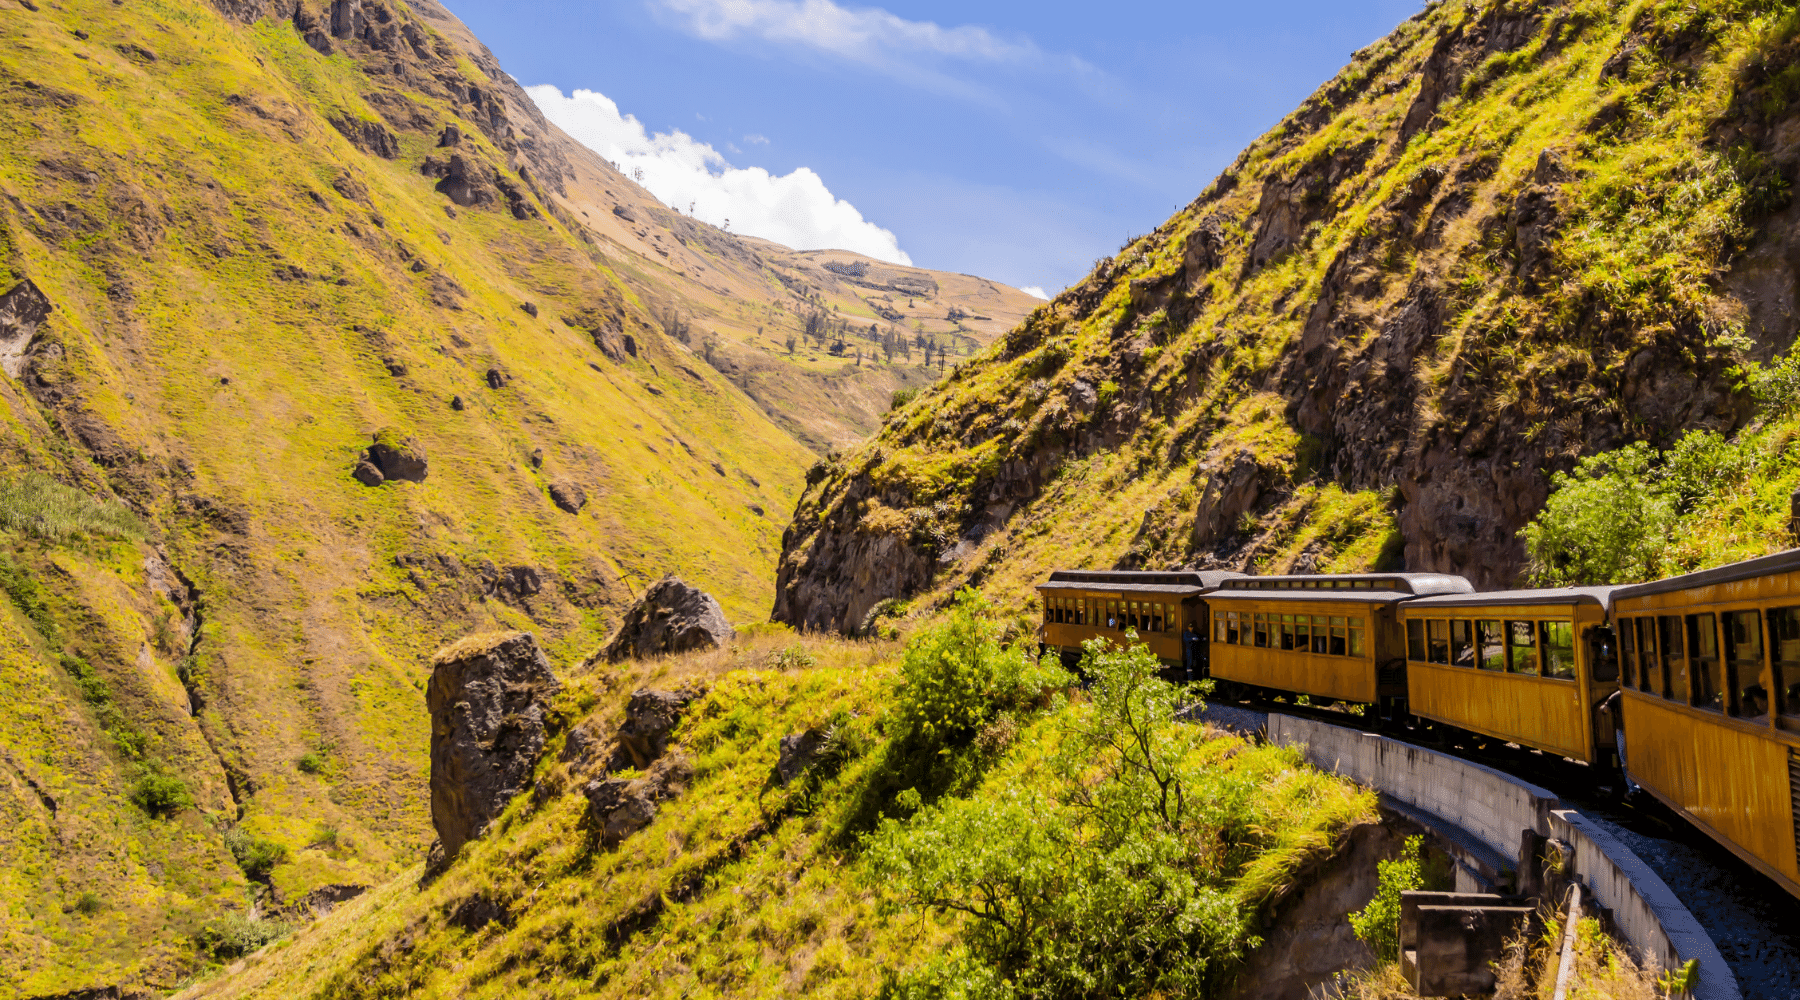 Devil's Nose train ride, Andes